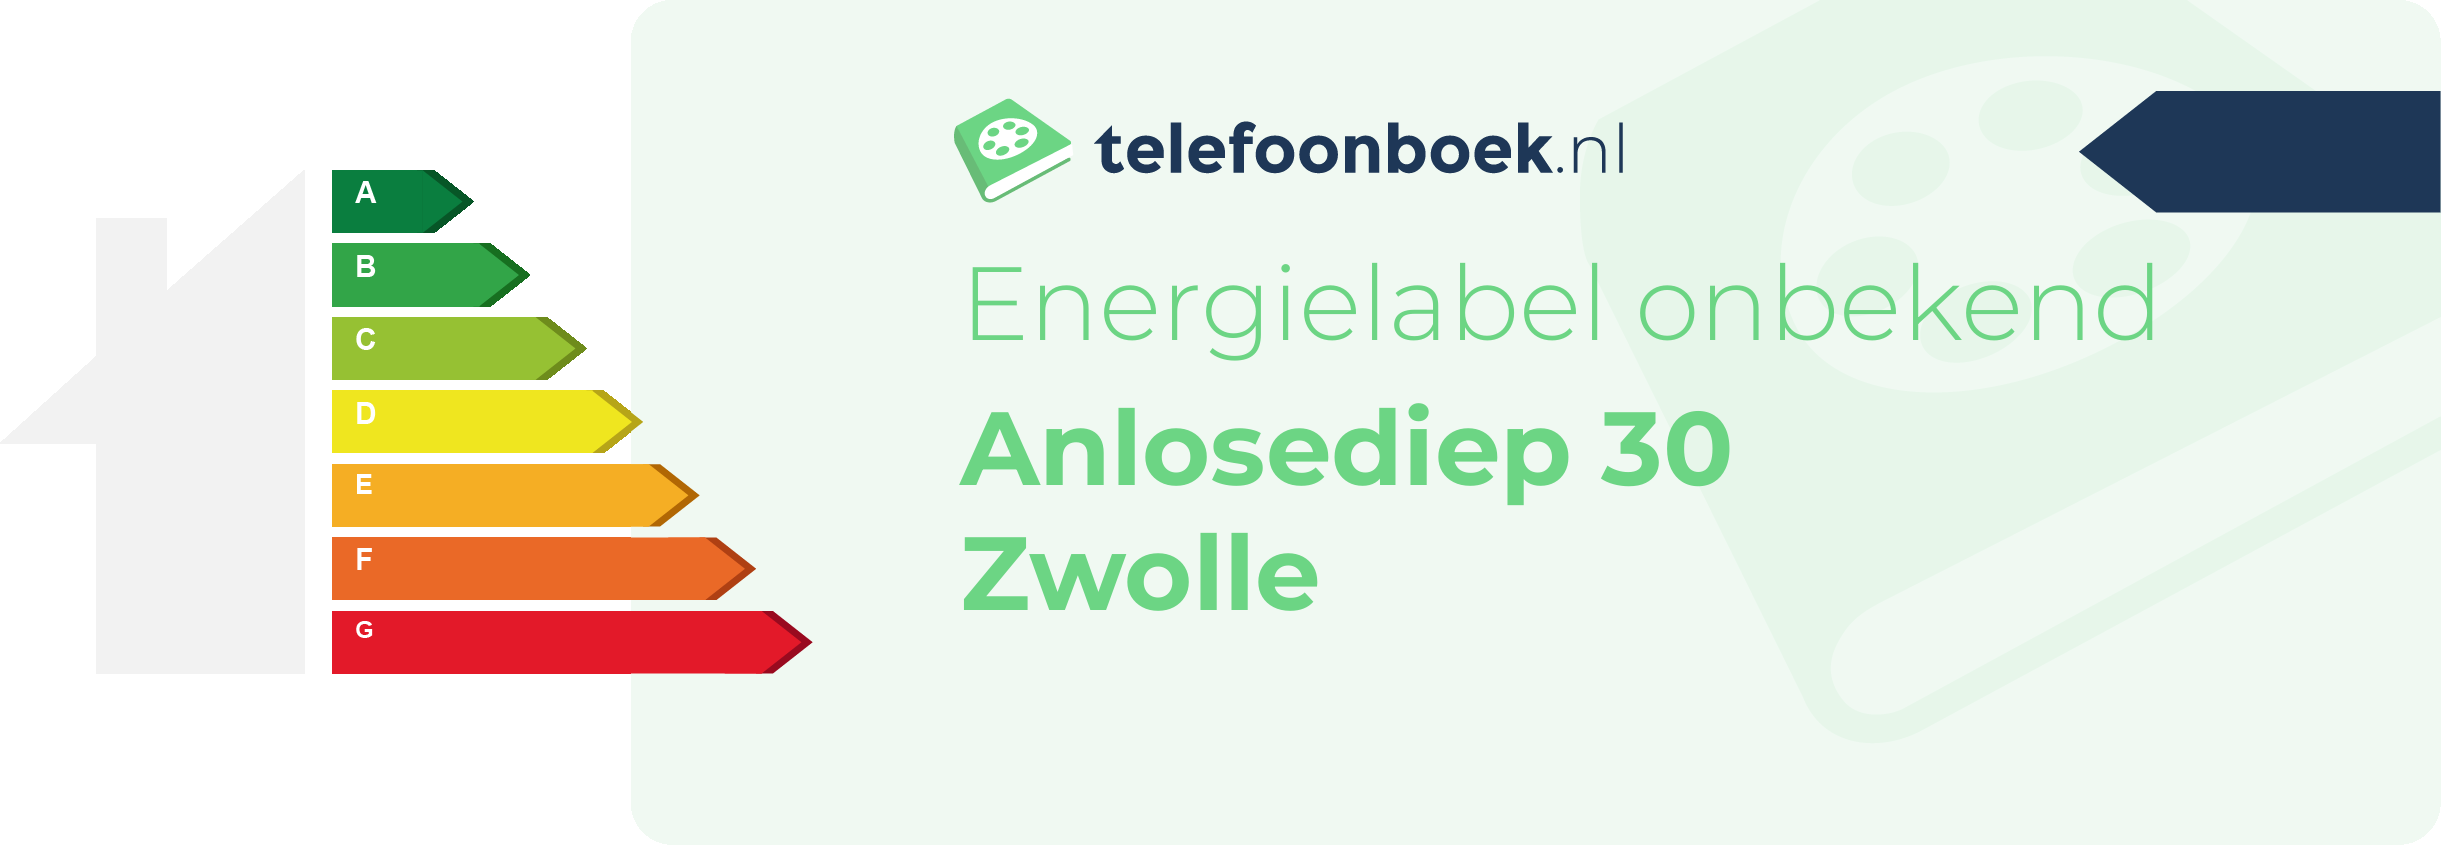 Energielabel Anlosediep 30 Zwolle